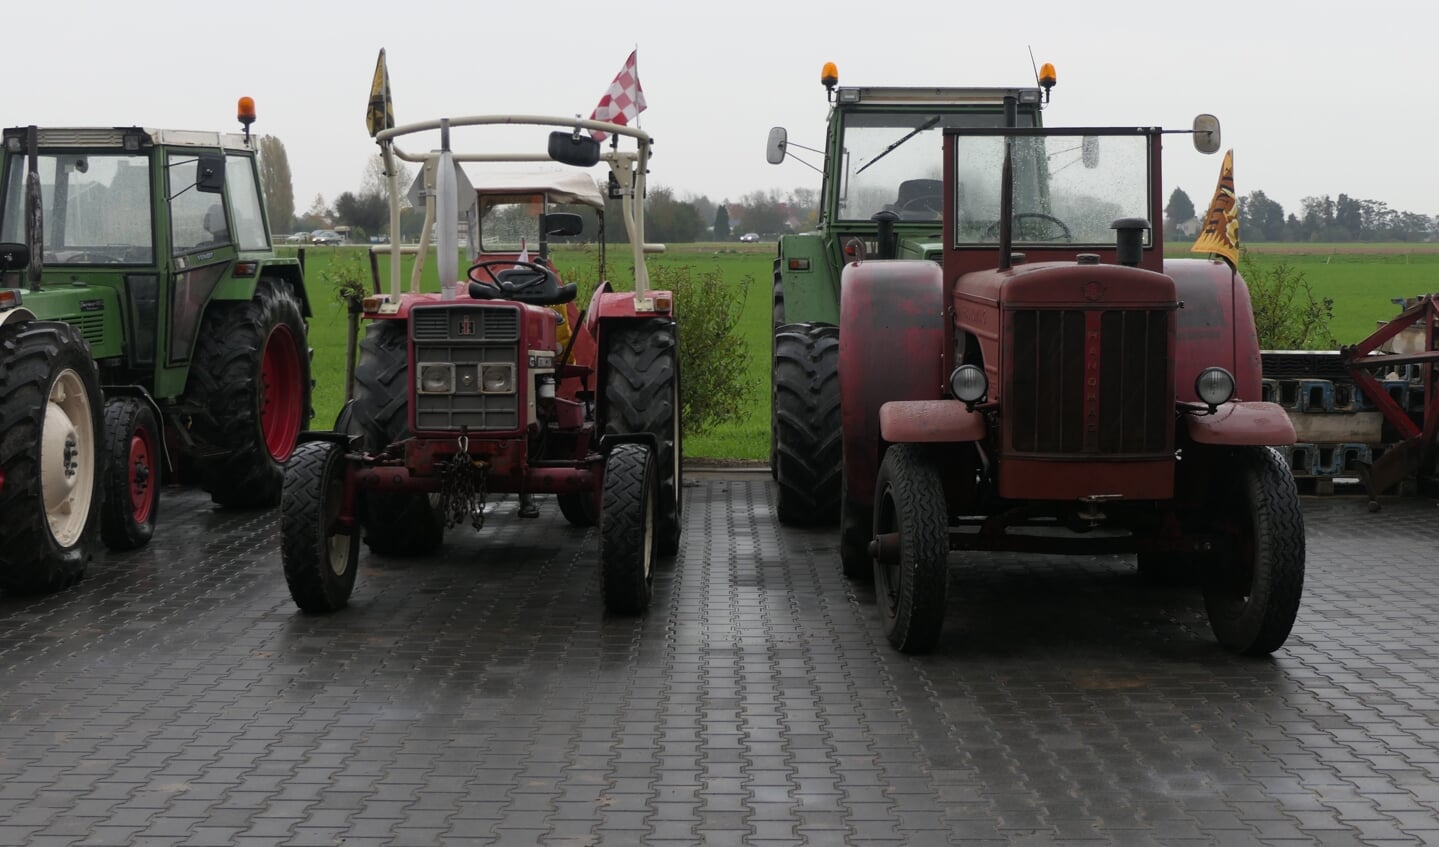 Snertrit historische tractoren